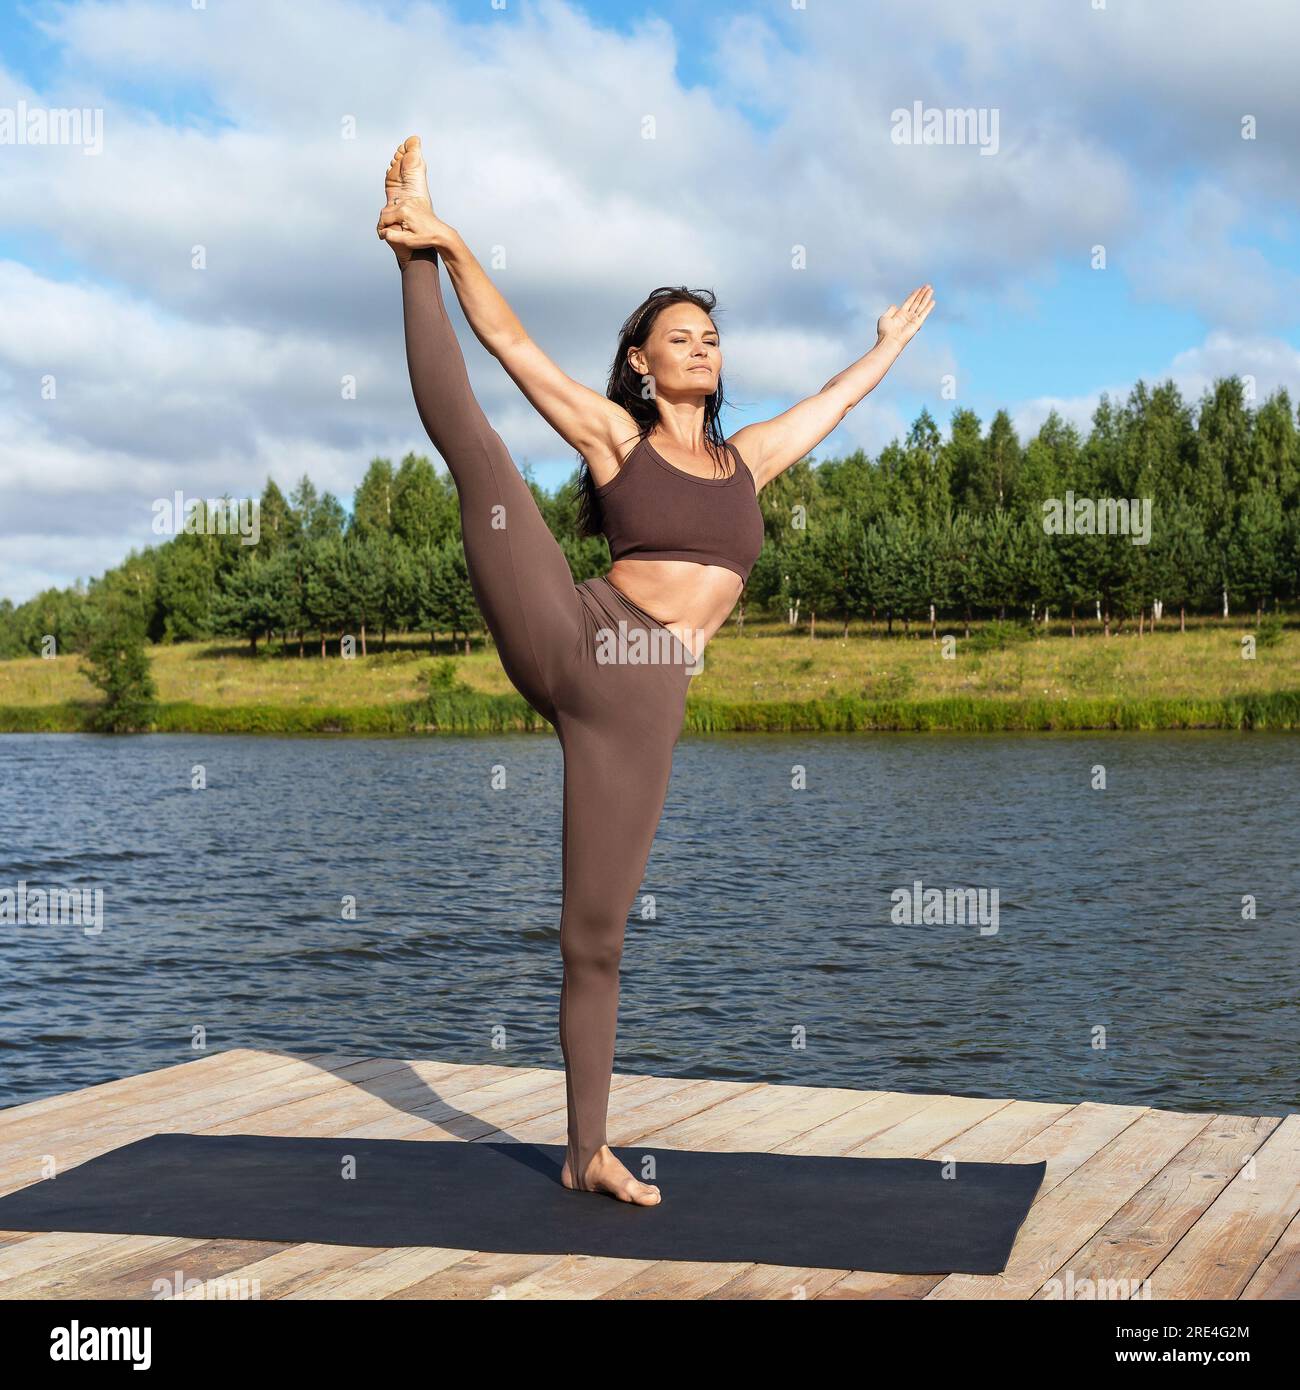 Praticienne de yoga femme, effectue l'exercice Utthita hasta Padangushthasana, équilibre sur une jambe, s'entraîne en vêtements de sport debout sur le pont en bois sur les lacs Banque D'Images